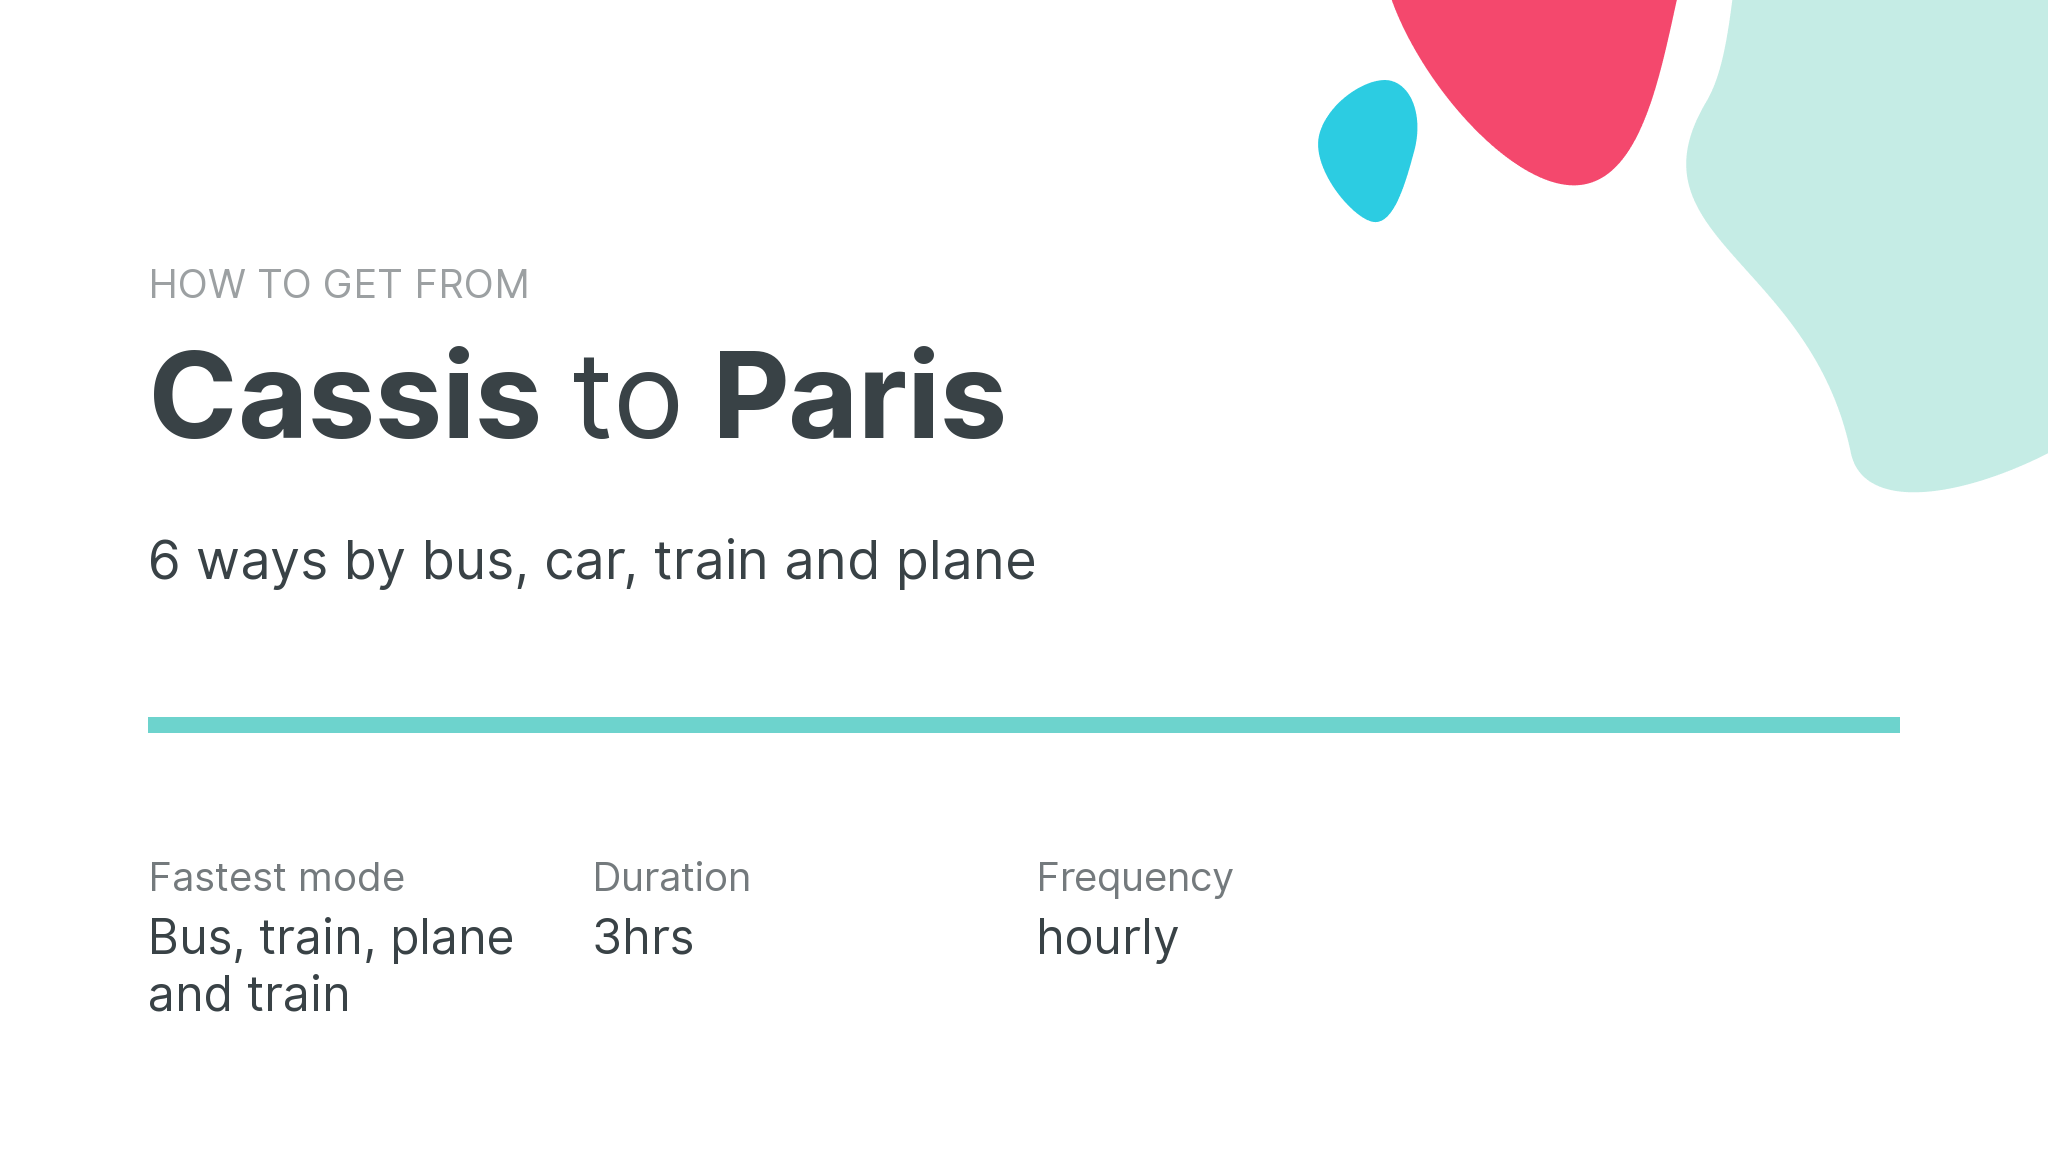 How do I get from Cassis to Paris